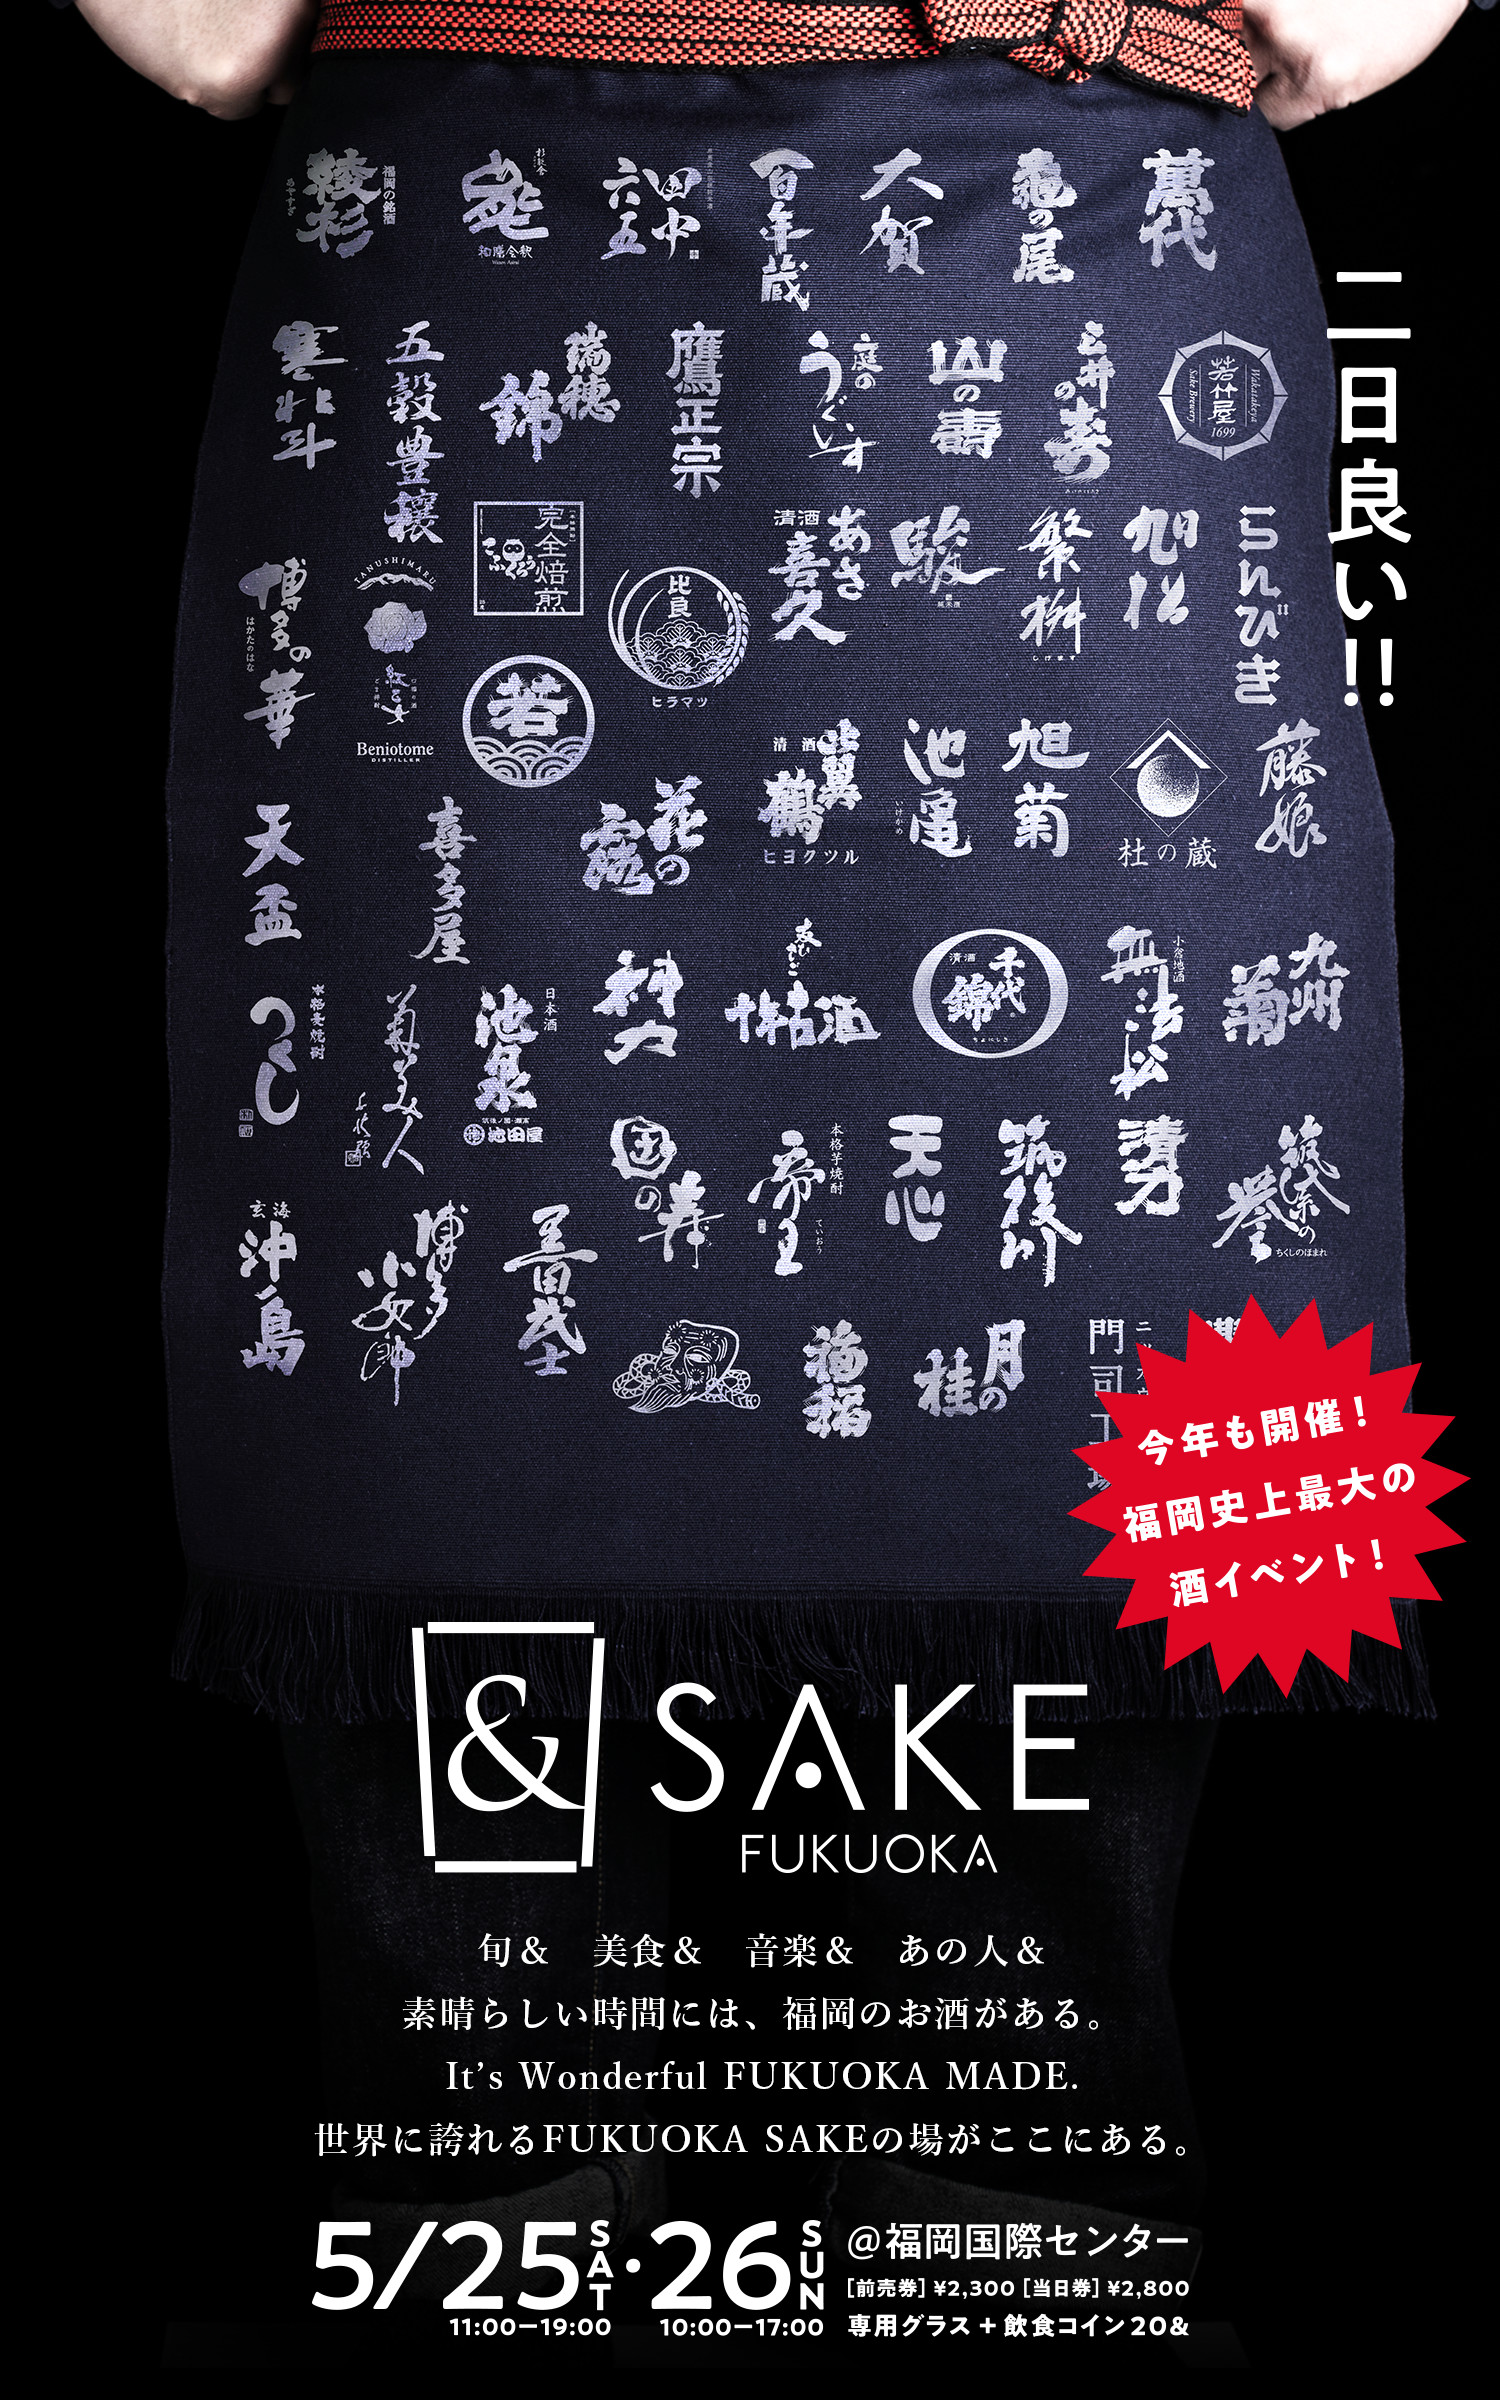 Sake Fukuoka